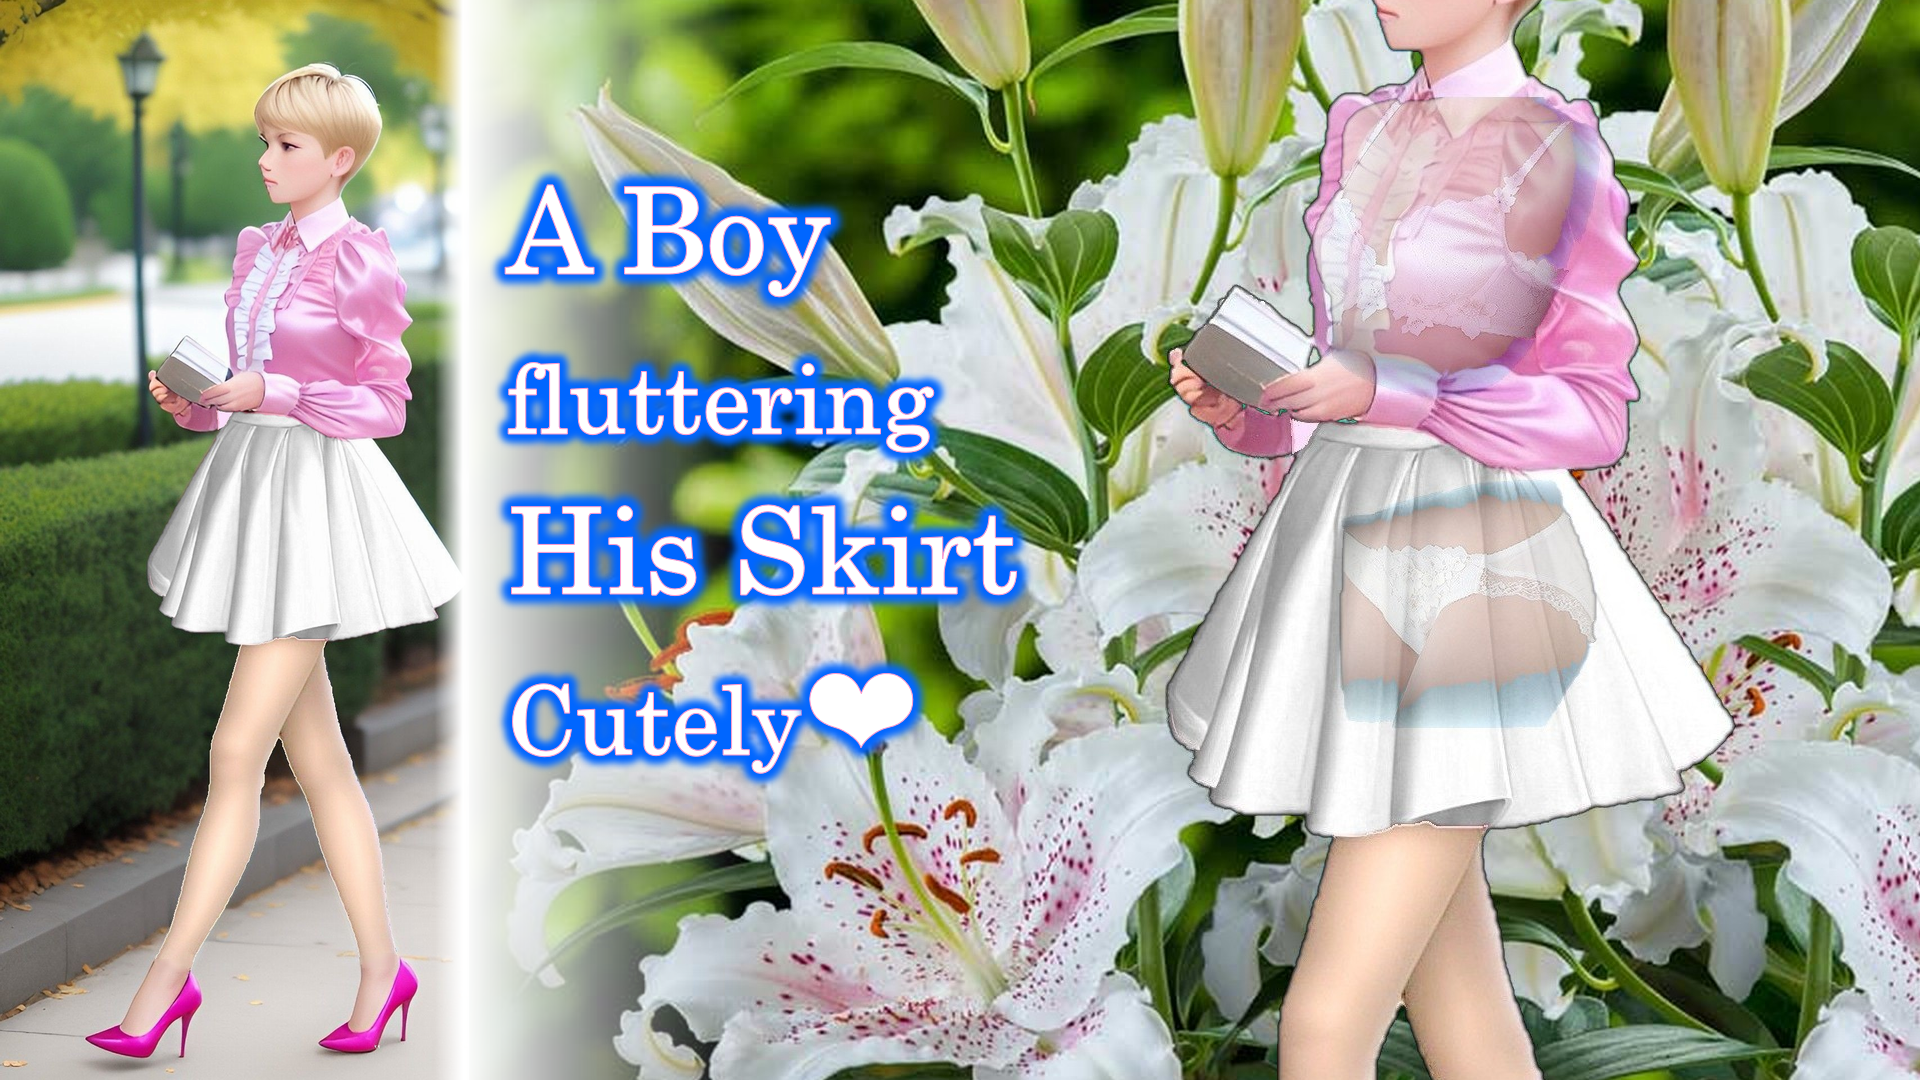 A Boy fluttering His Skirt Cutely E